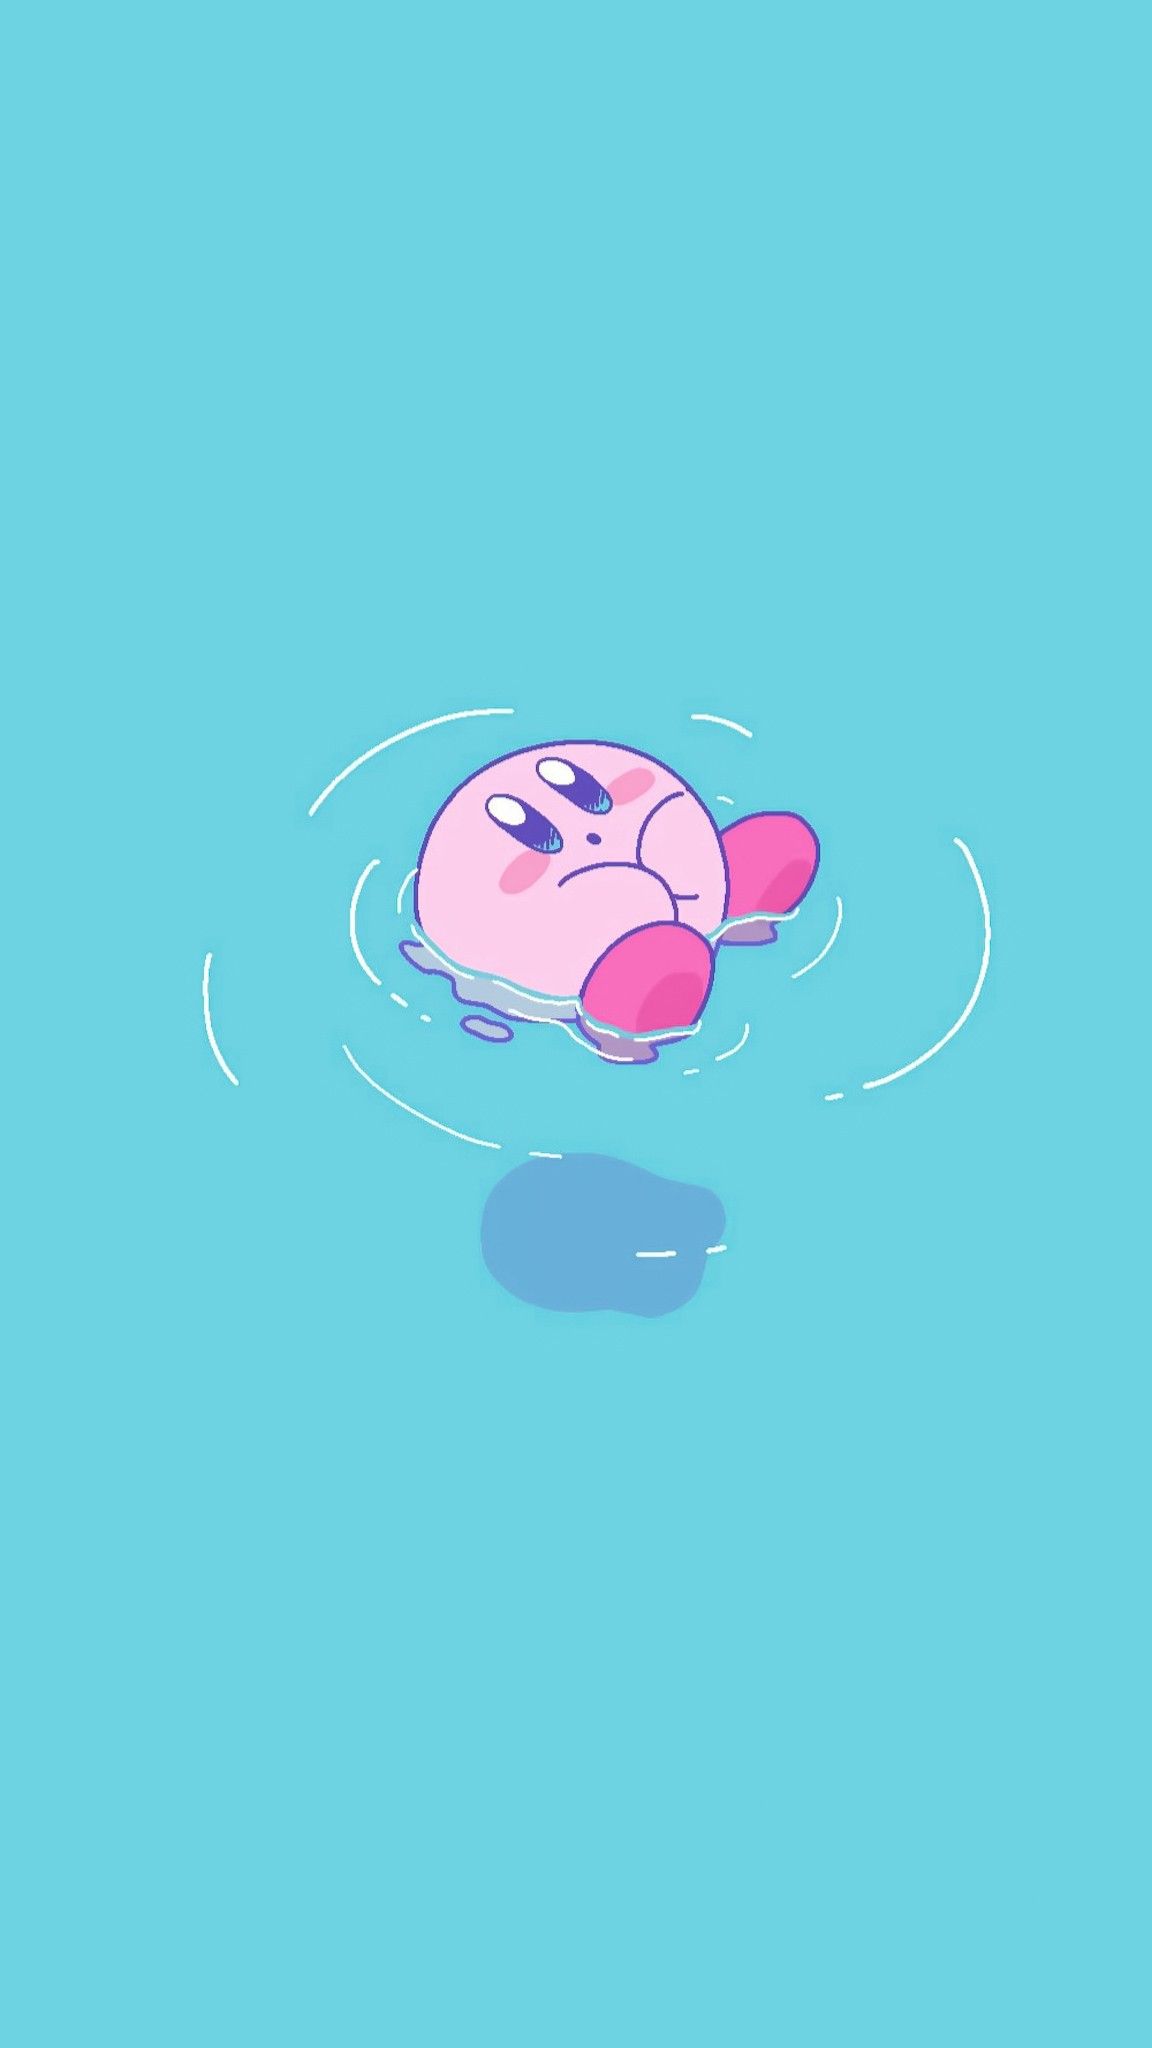 Nếu bạn thích những thứ dễ thương và đáng yêu, hãy xem ngay hình nền Kirby để được tràn ngập bởi sự ngọt ngào và tinh nghịch của nhân vật này. Kirby là một trong những nhân vật được yêu thích nhất trong thế giới game, với nét đáng yêu khó cưỡng lại.